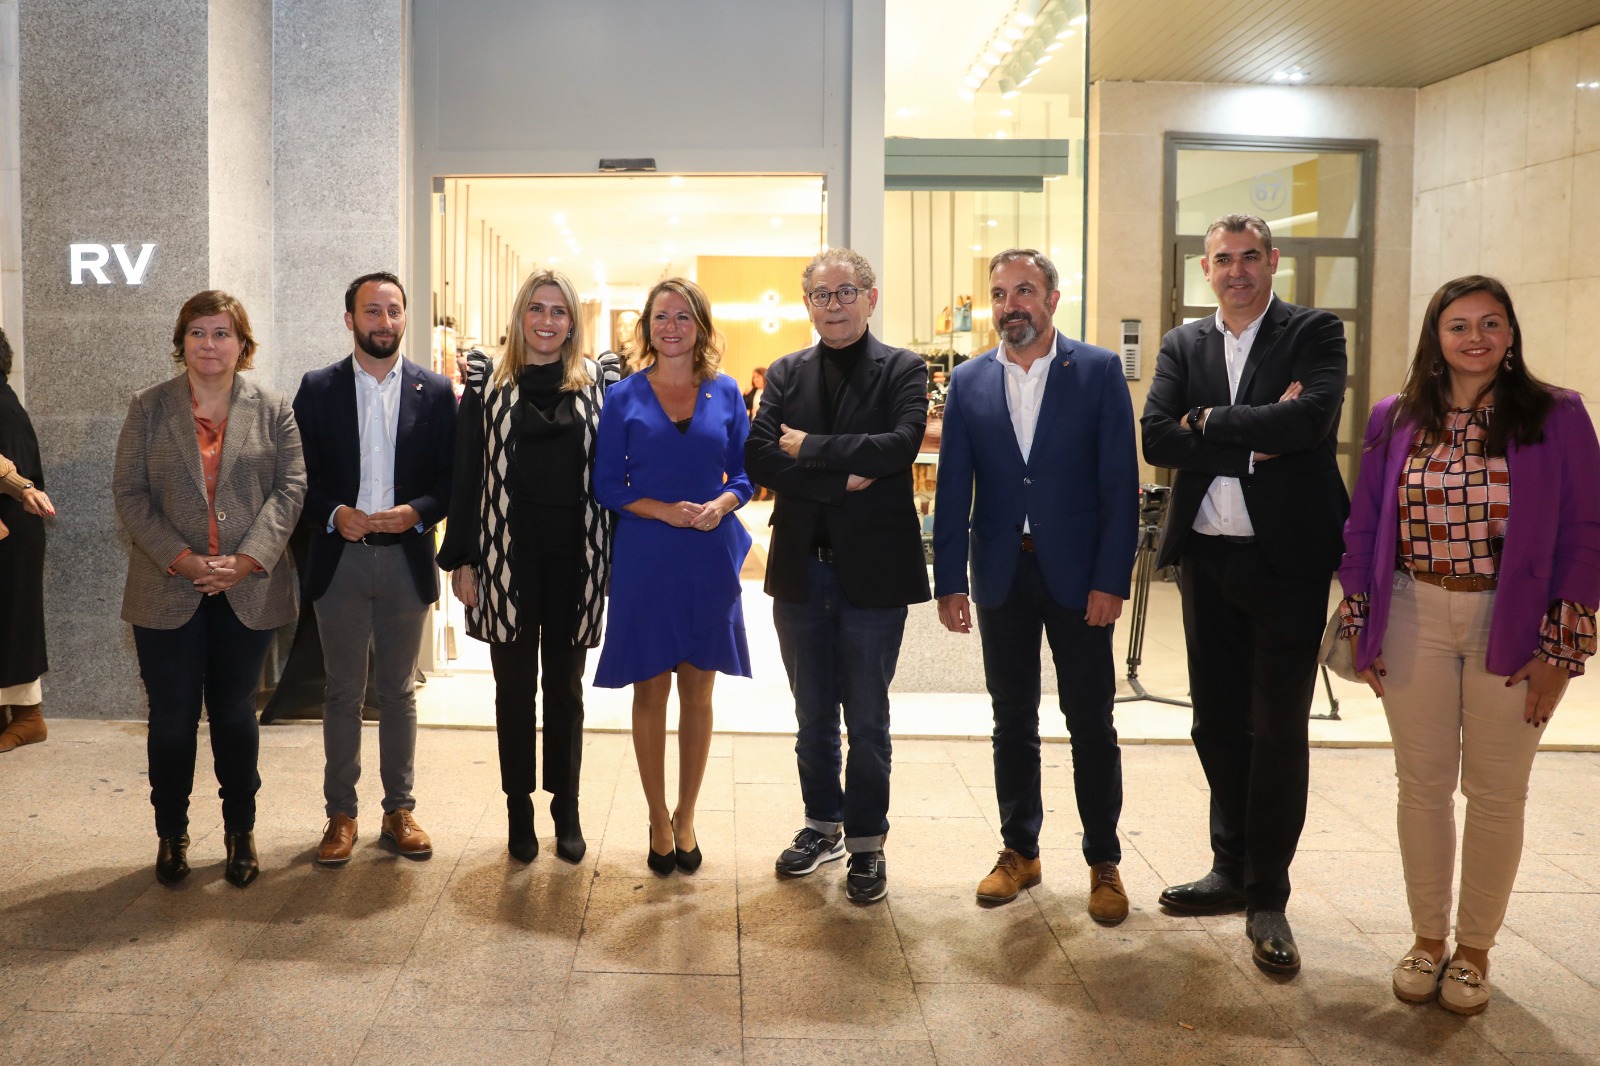 Begoña Carrasco: “La apuesta de Roberto Verino por el centro de Castellón nos impulsa a ser referentes de primeras marcas de moda”